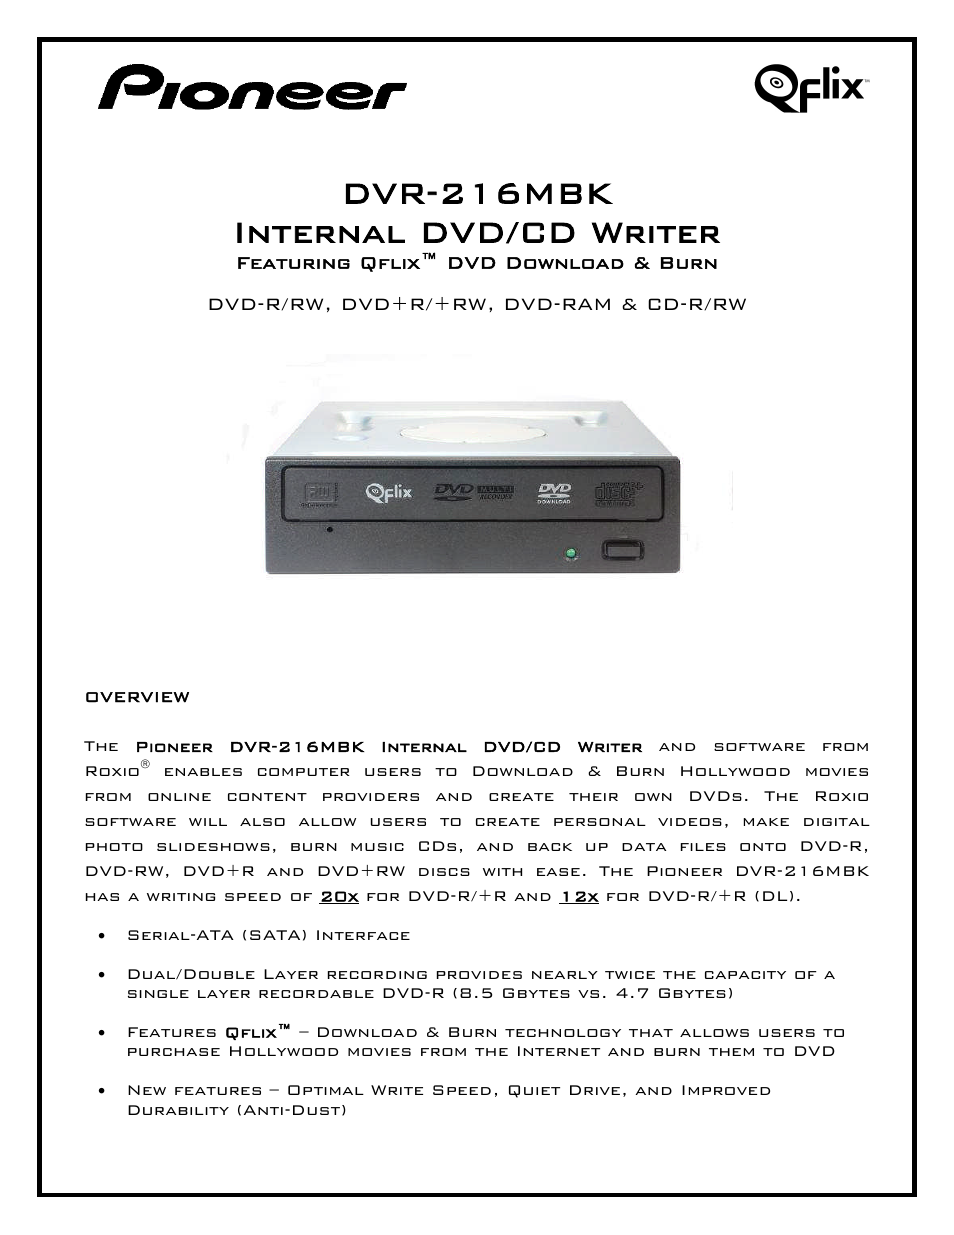 DVR-216MBK